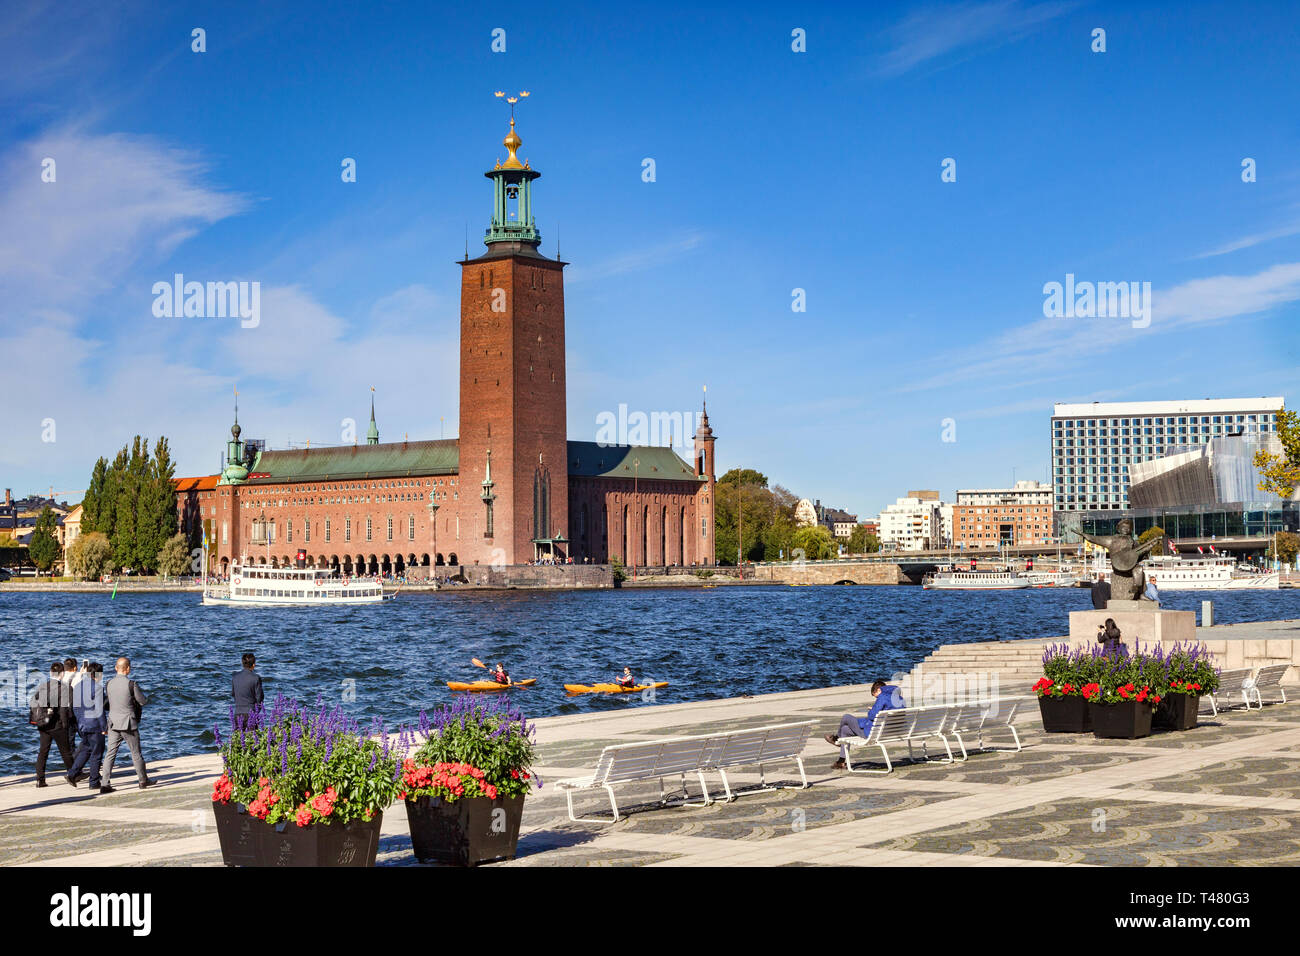 16. September 2018: Stockholm, Schweden - Das Rathaus, eines der bekanntesten Gebäude in Schweden, und die Heimat der Nobelpreis und Veranstaltungsräume. Zwei Kajaks im Wasser. Stockfoto